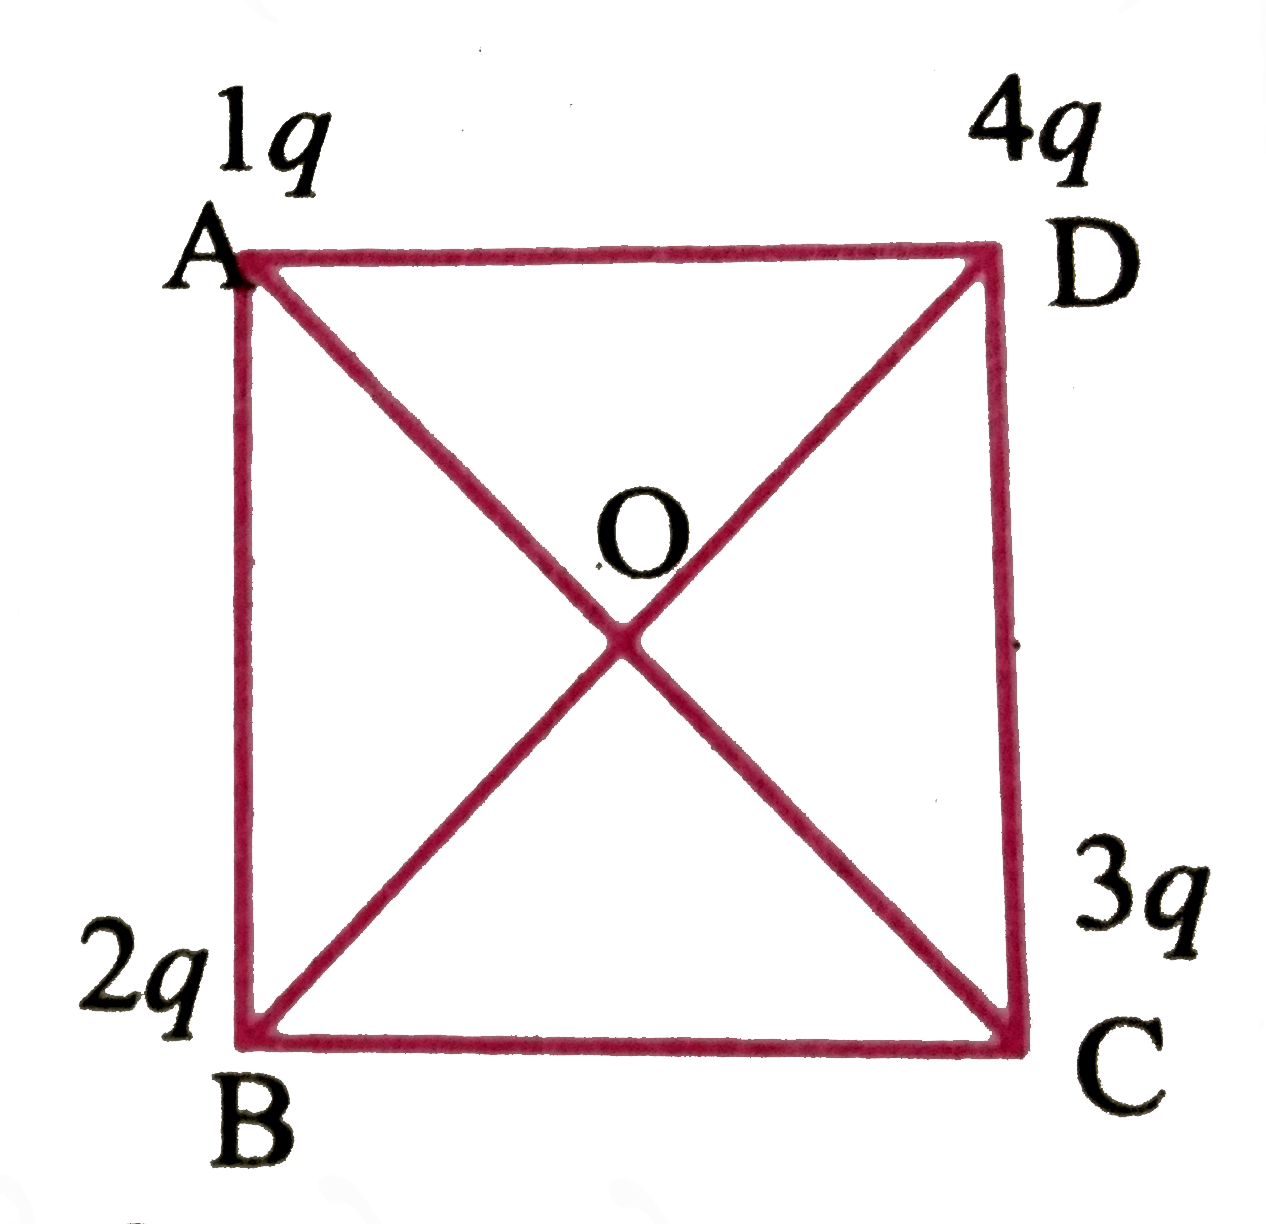 चार आवेश 1q, 2q, 3q और 4q  एक वर्ग के कोने और पर चित्र में दर्शायें अनुसार रखे गये हैं। वर्ग के केंद्र O पर विद्युत - क्षेत्र की दिशा होगी -